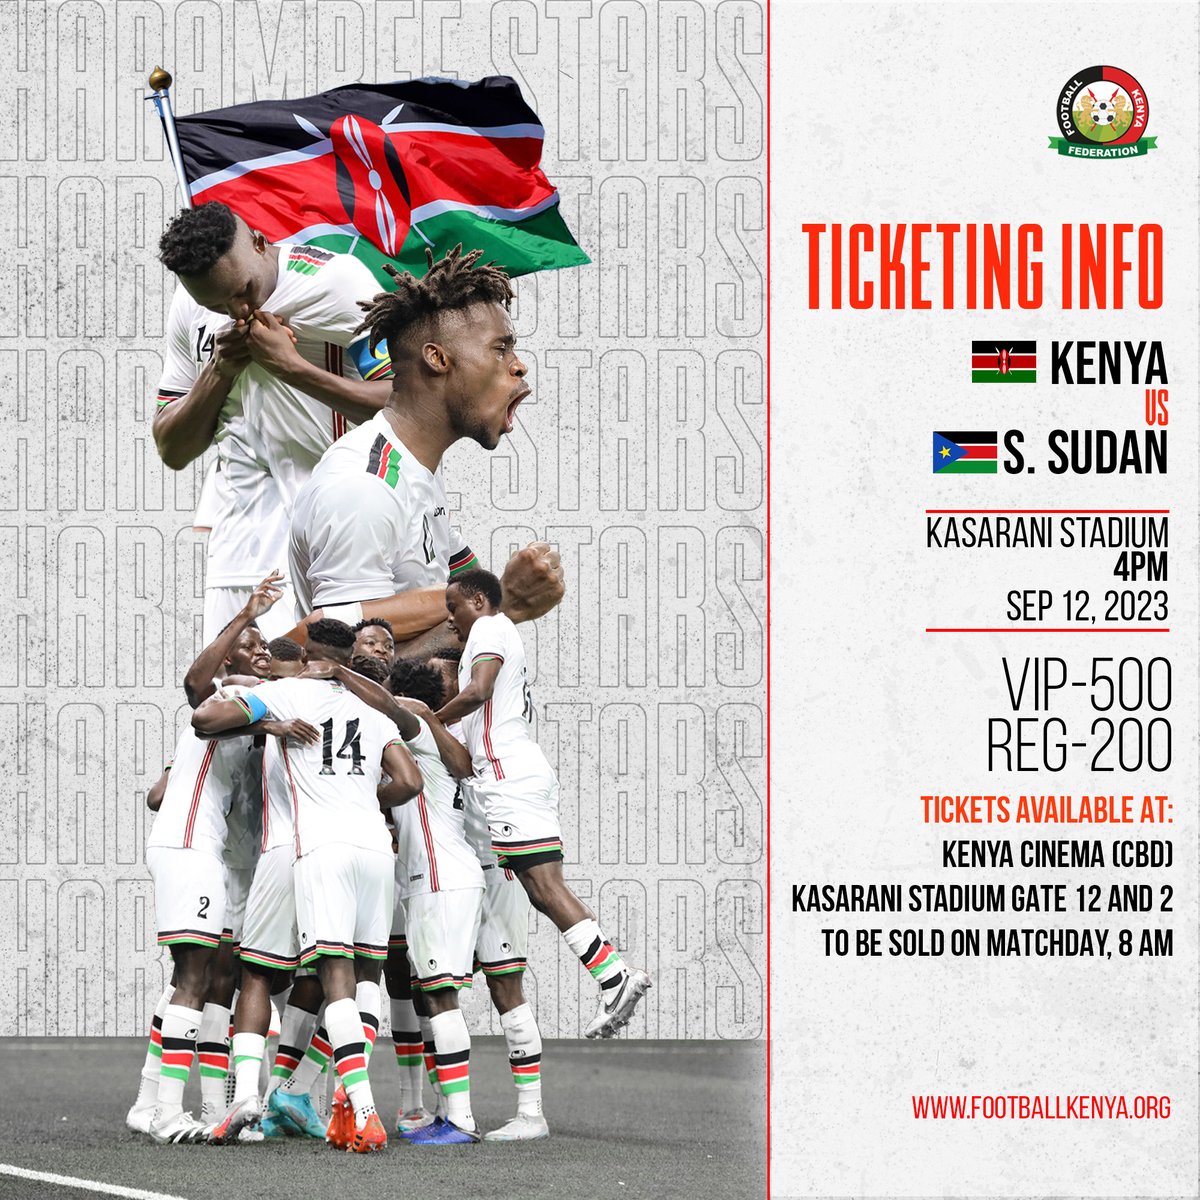 Let's support Harambee Stars on Tuesday at Kasarani Stadium from 4Pm.
#KenvsSsd #KENSSD #RaymondOmollo